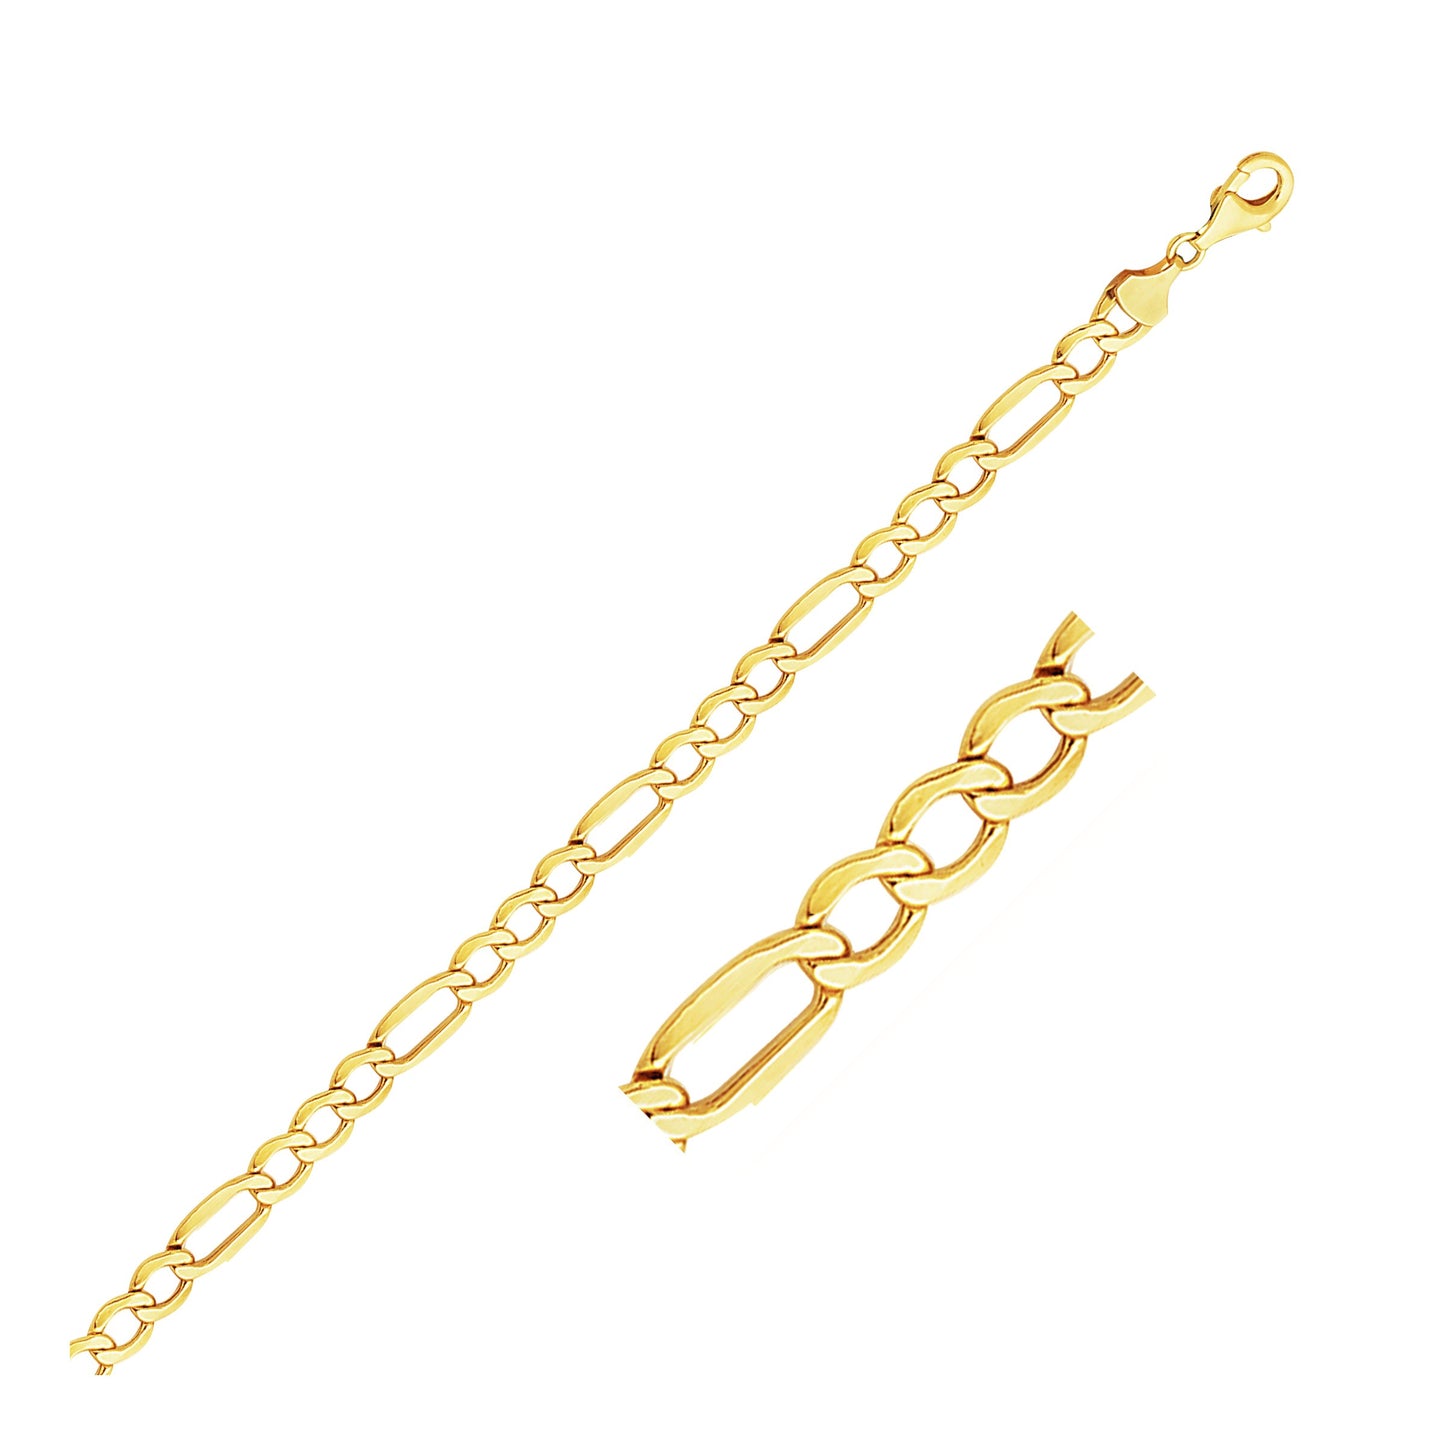 6.5mm 14k Yellow Gold Lite Figaro Bracelet